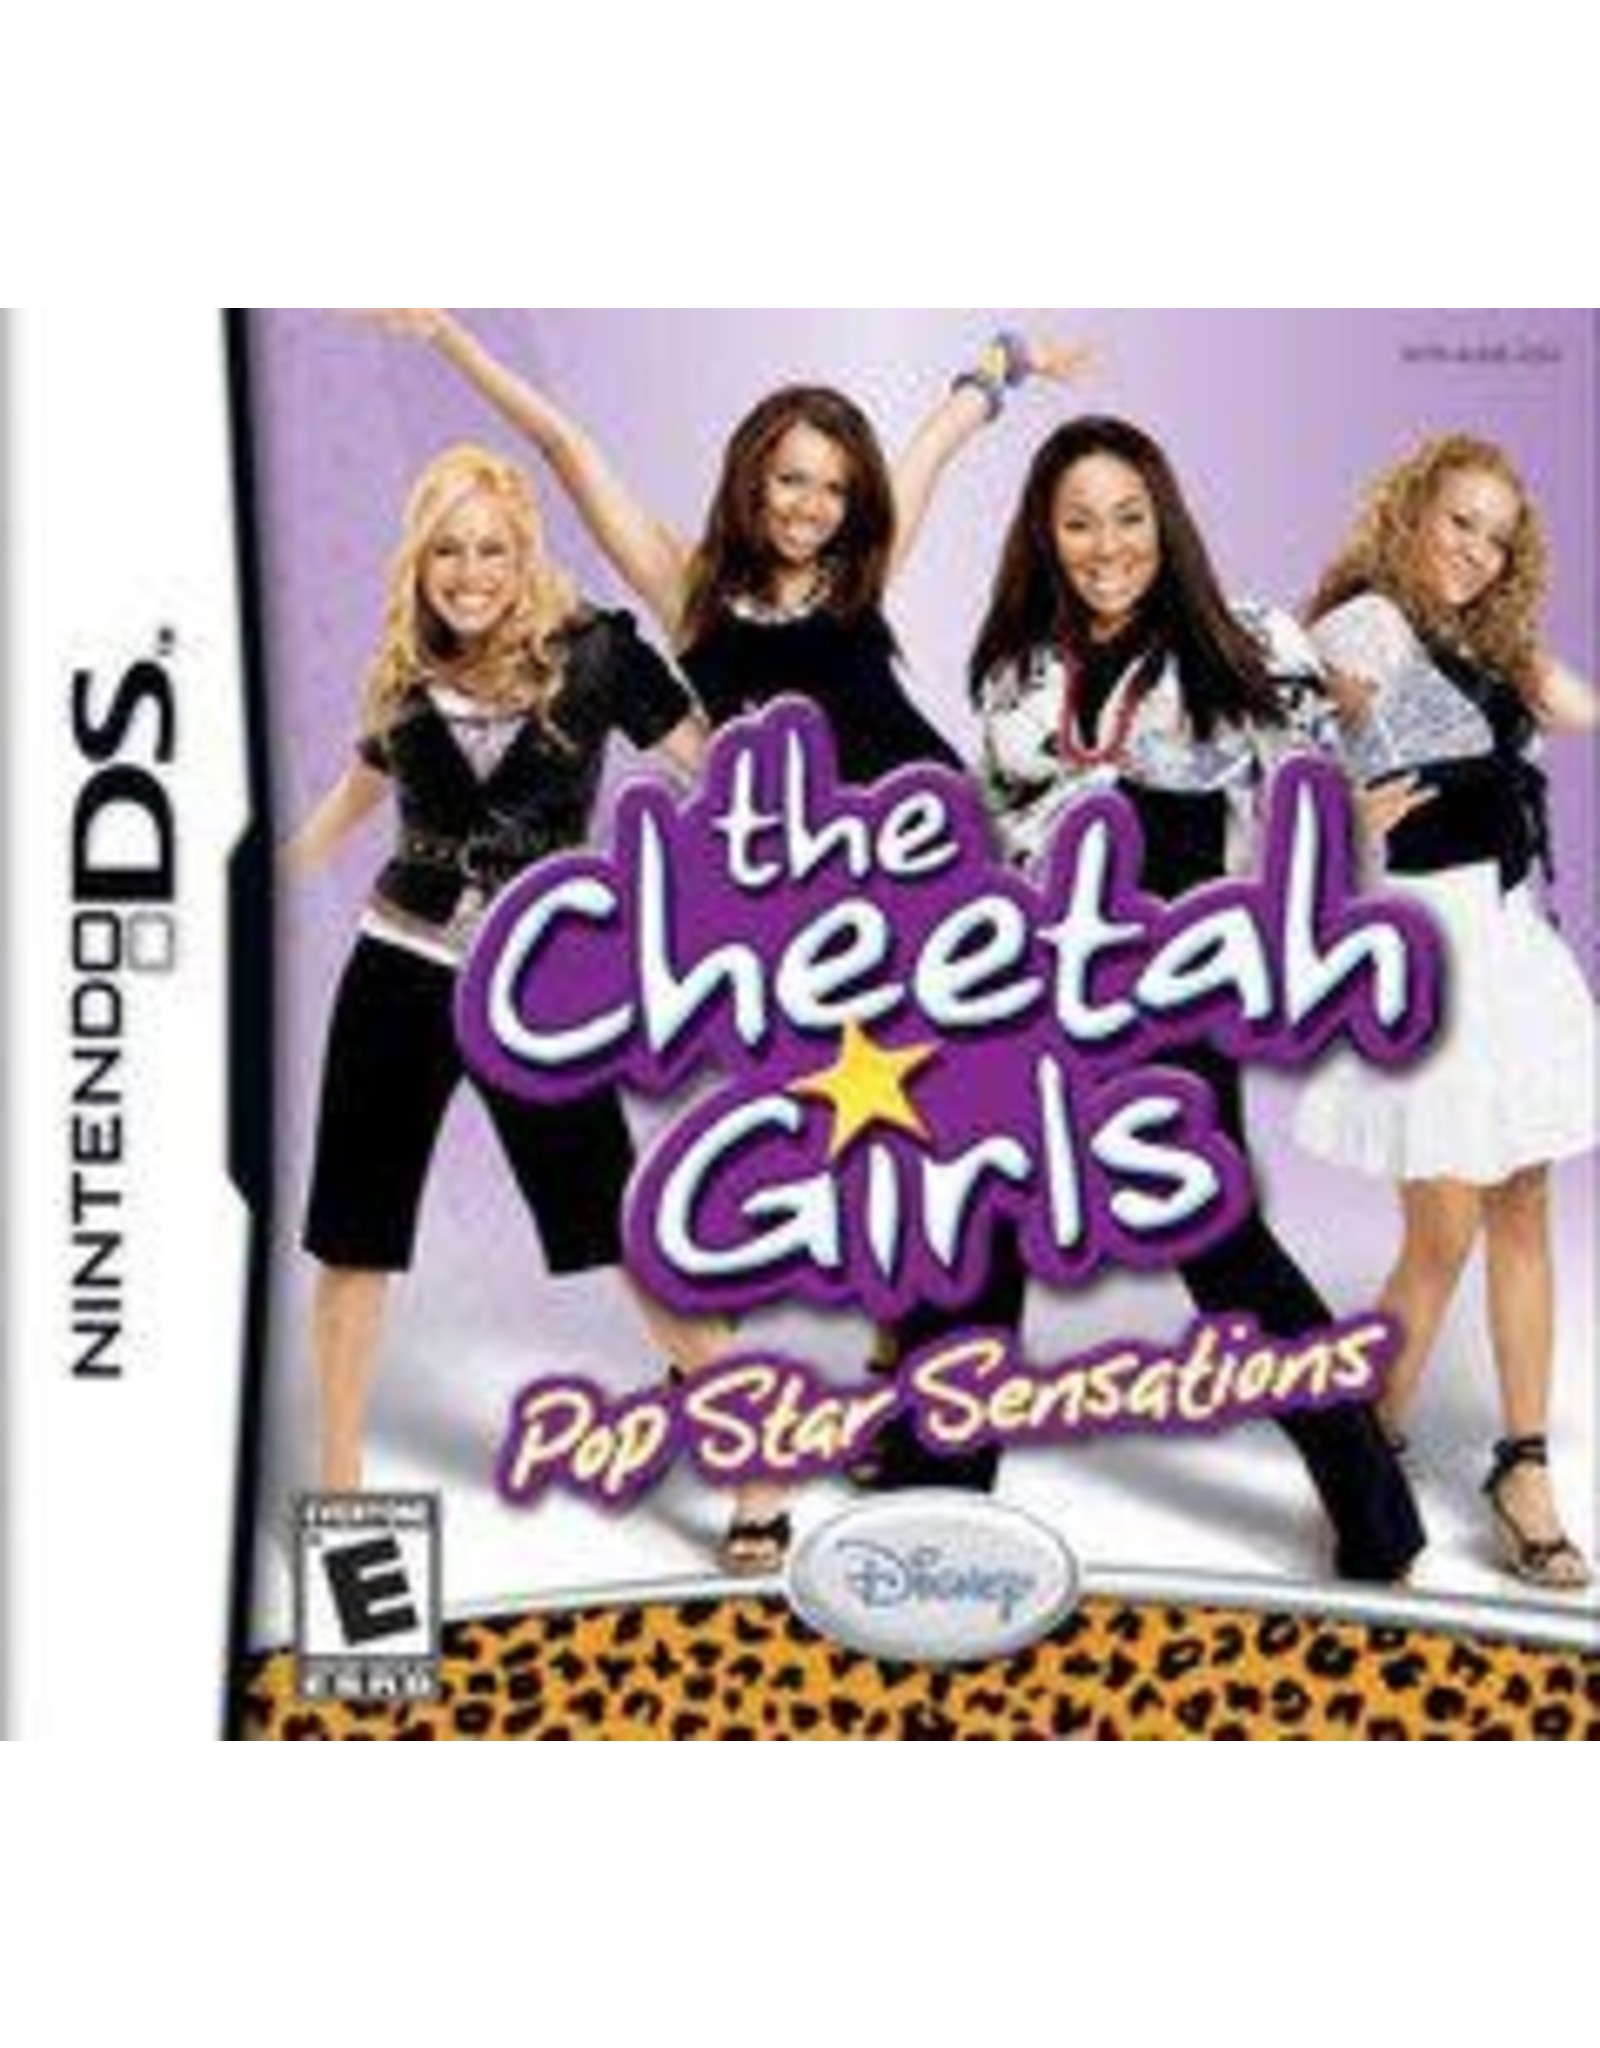 Nintendo DS Cheetah Girls Pop Star Sensations (Cart Only)